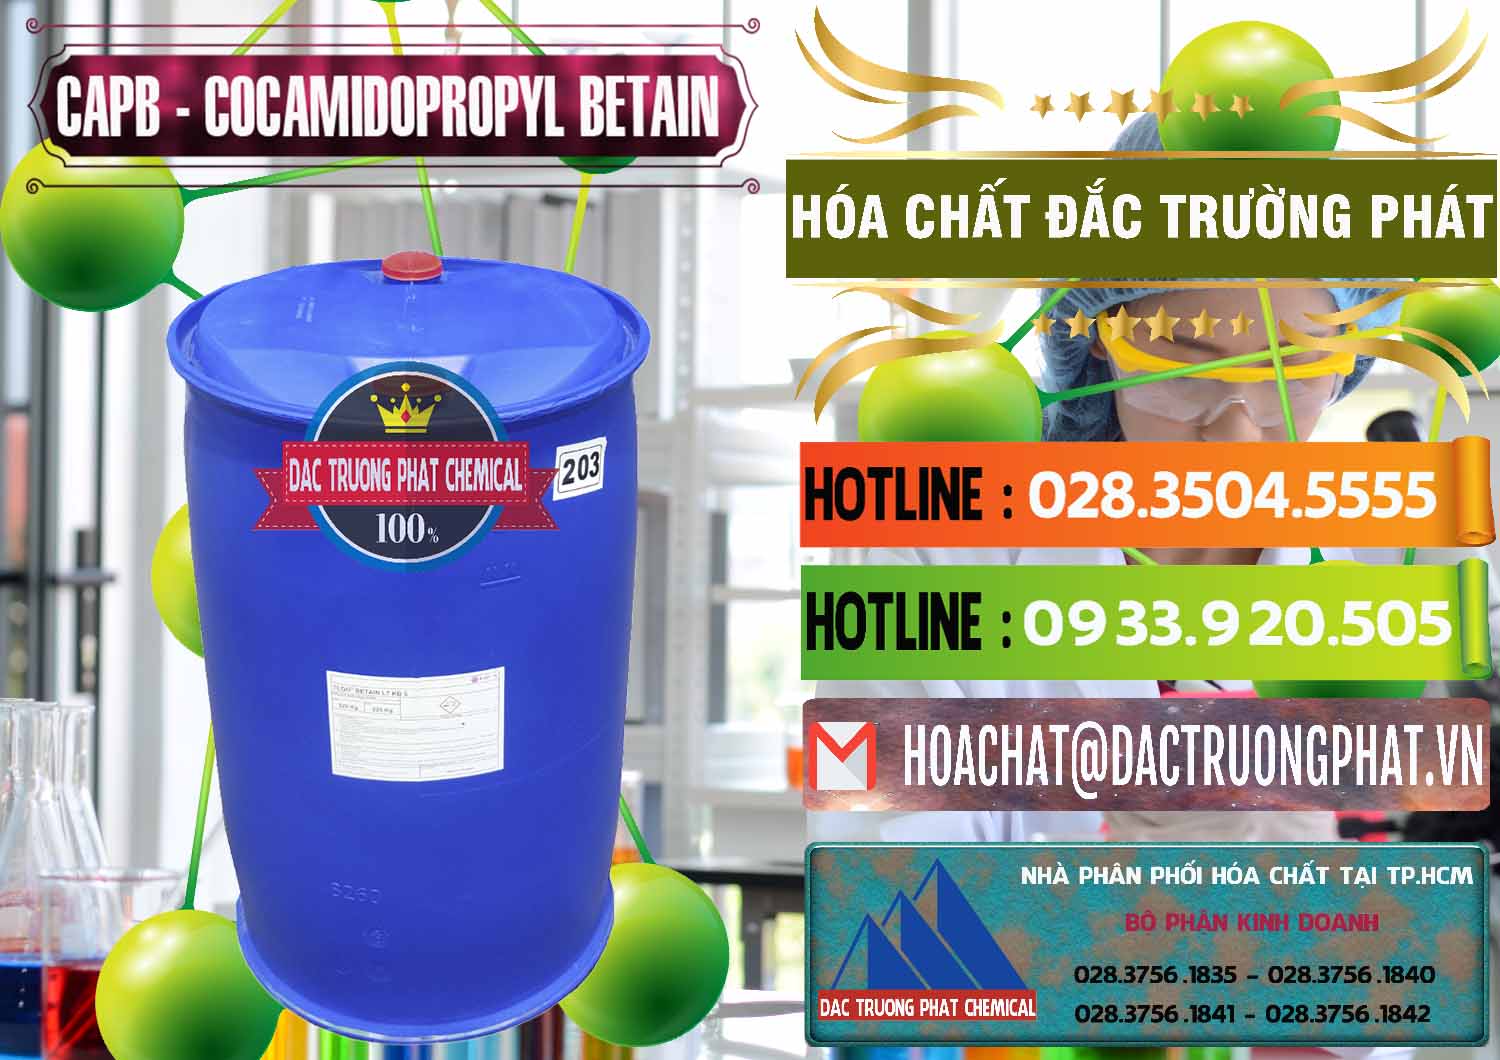 Cty cung cấp _ bán Cocamidopropyl Betaine - CAPB Tego Indonesia - 0327 - Phân phối _ bán hóa chất tại TP.HCM - cungcaphoachat.com.vn